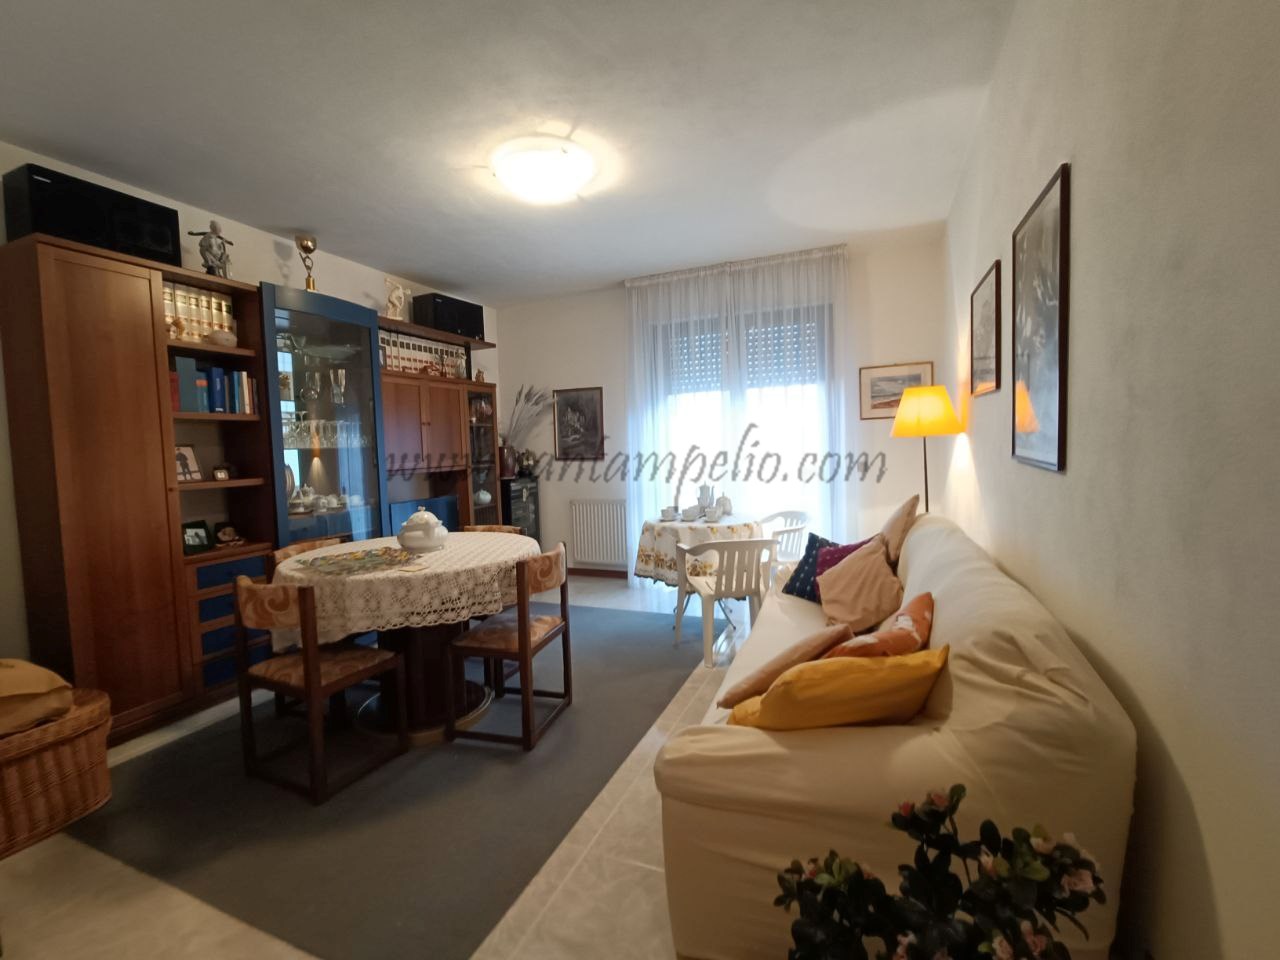 Appartamento in vendita a Vallecrosia, 3 locali, prezzo € 290.000 | PortaleAgenzieImmobiliari.it